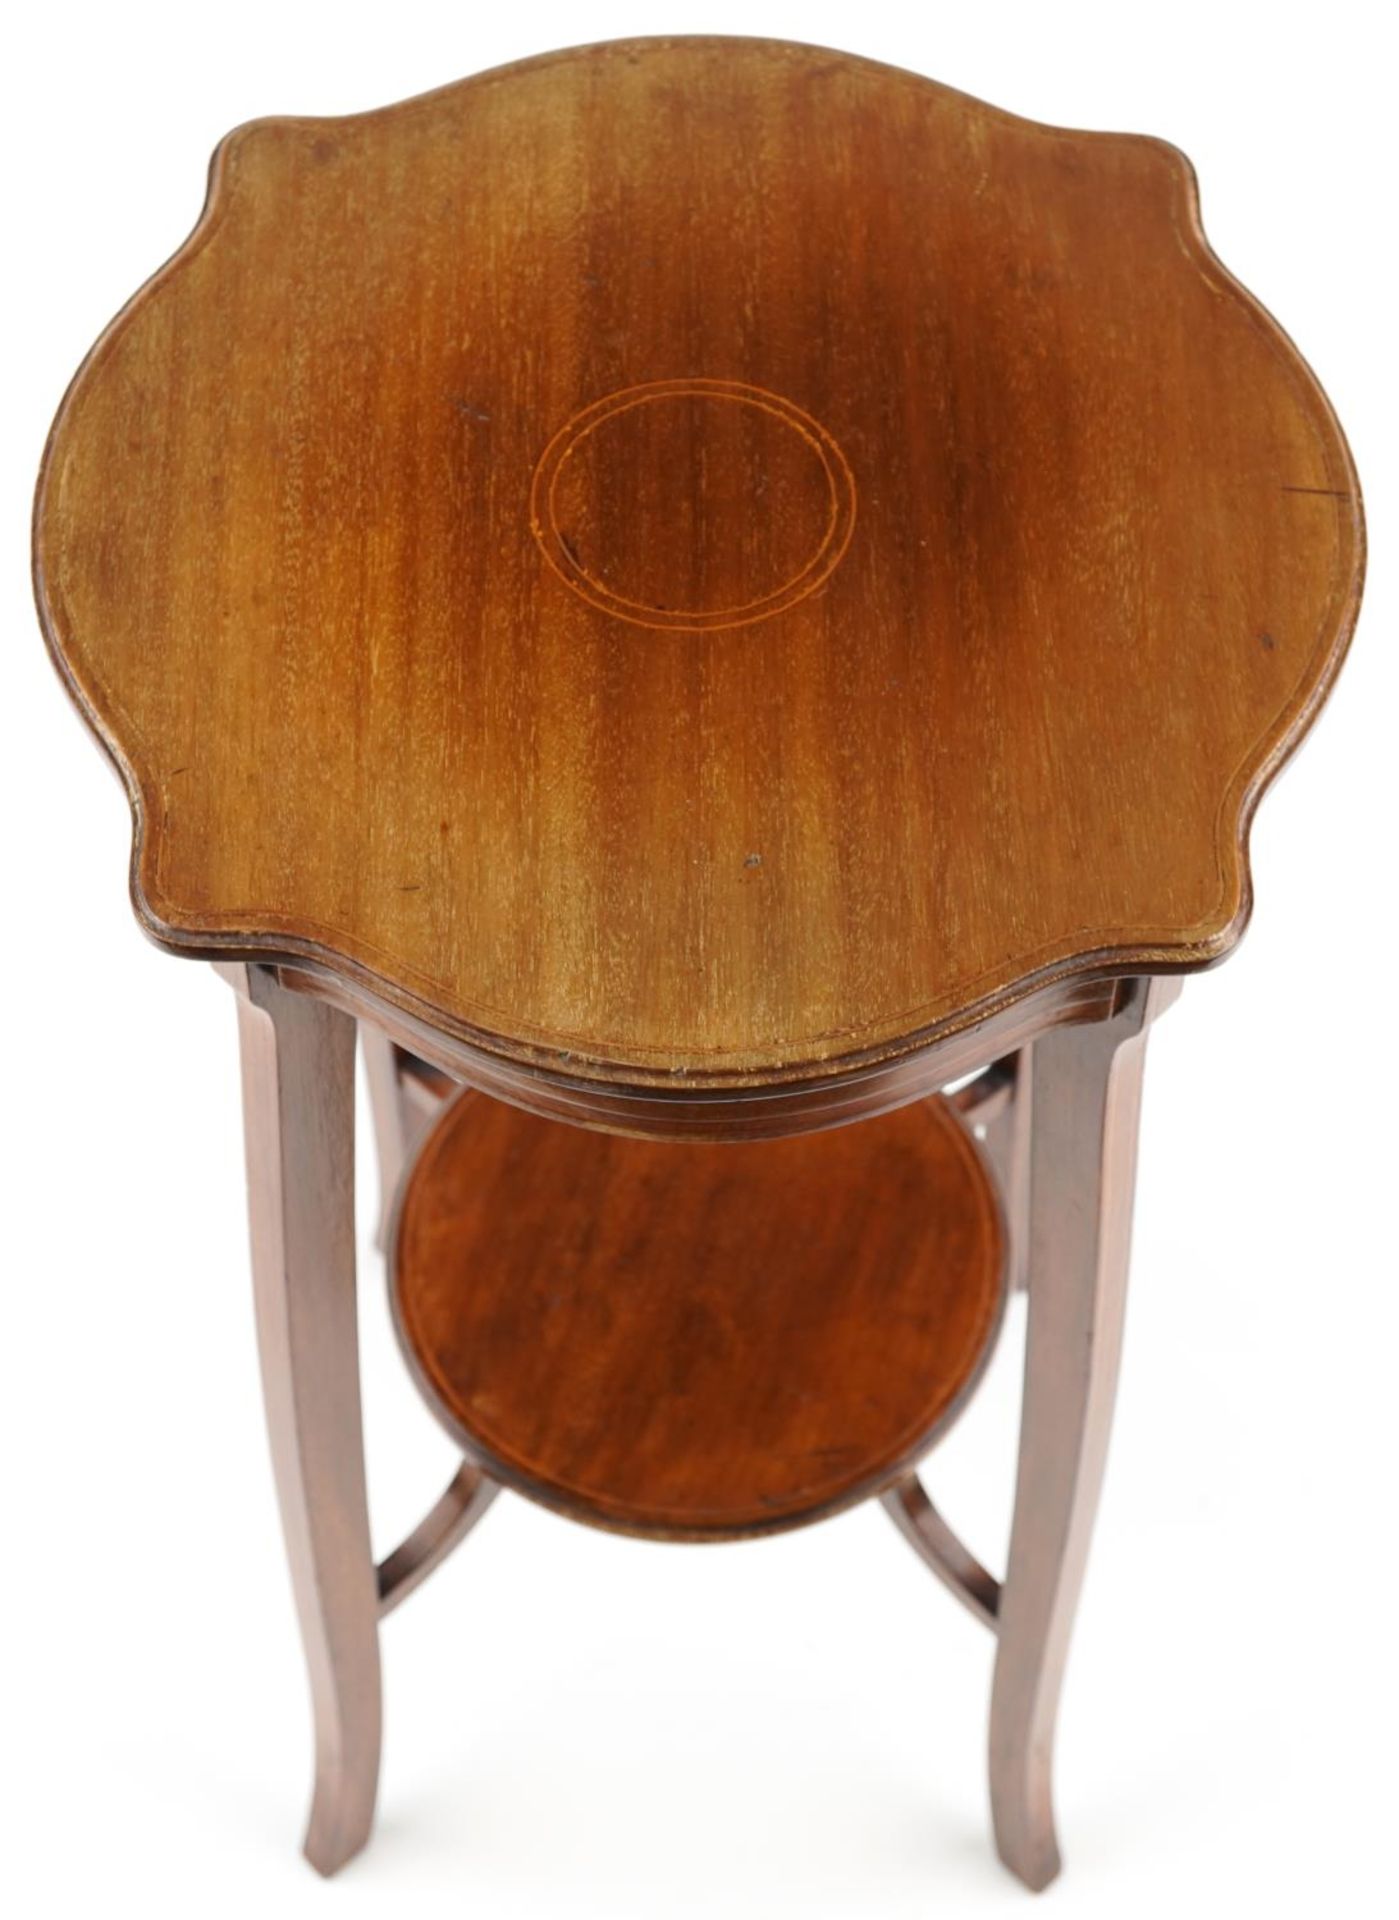 Edwardian inlaid mahogany stand with under tier, 64cm high x 35.5cm in diameter - Bild 3 aus 4